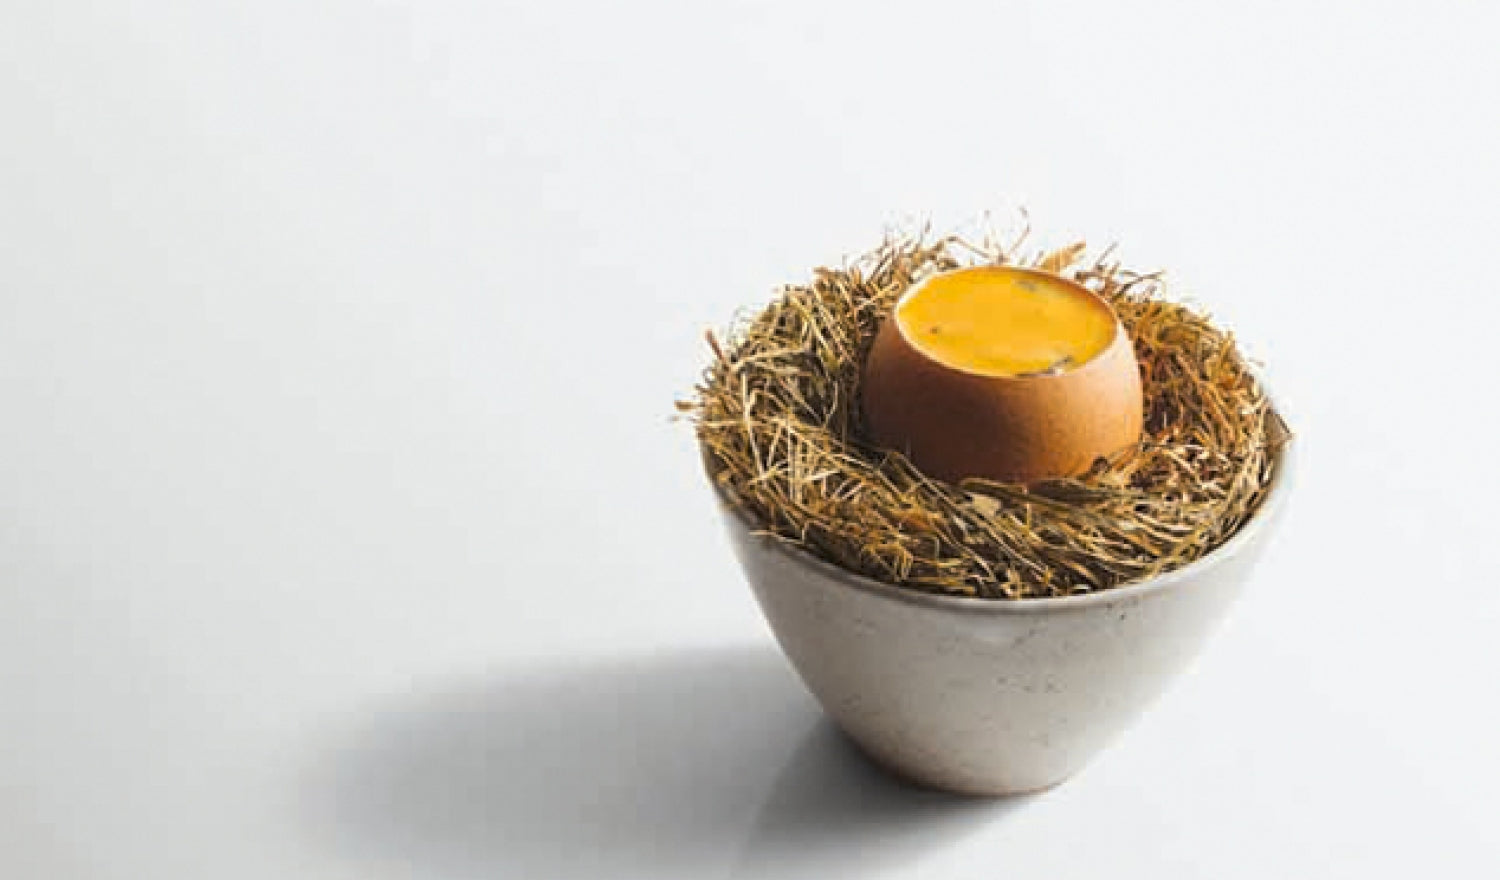 Ollie Dabbous's Coddled Egg Recipe